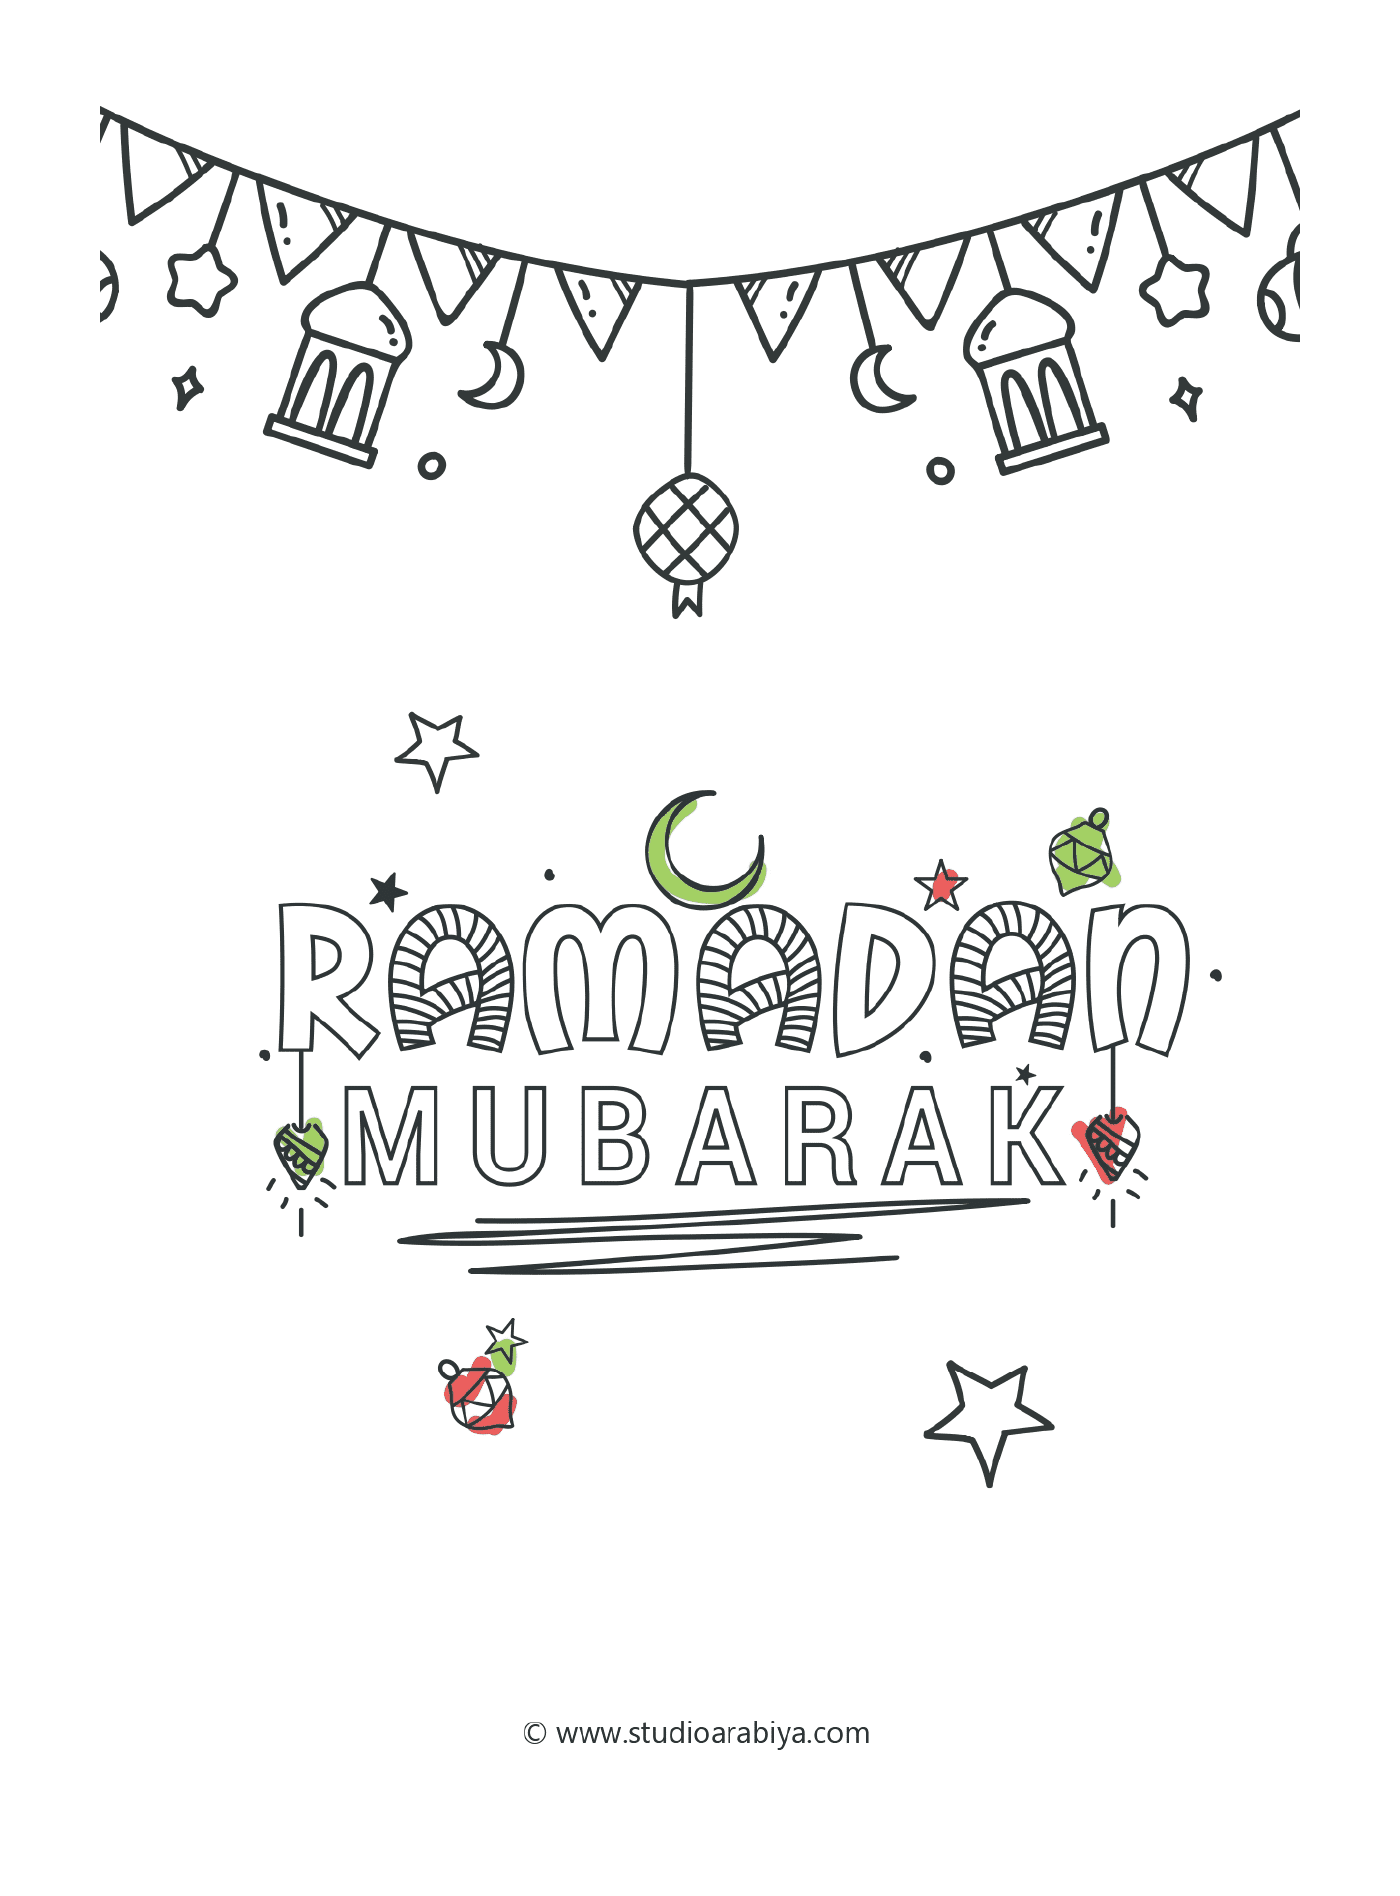  Ramadan Mubarak, happy festivities 